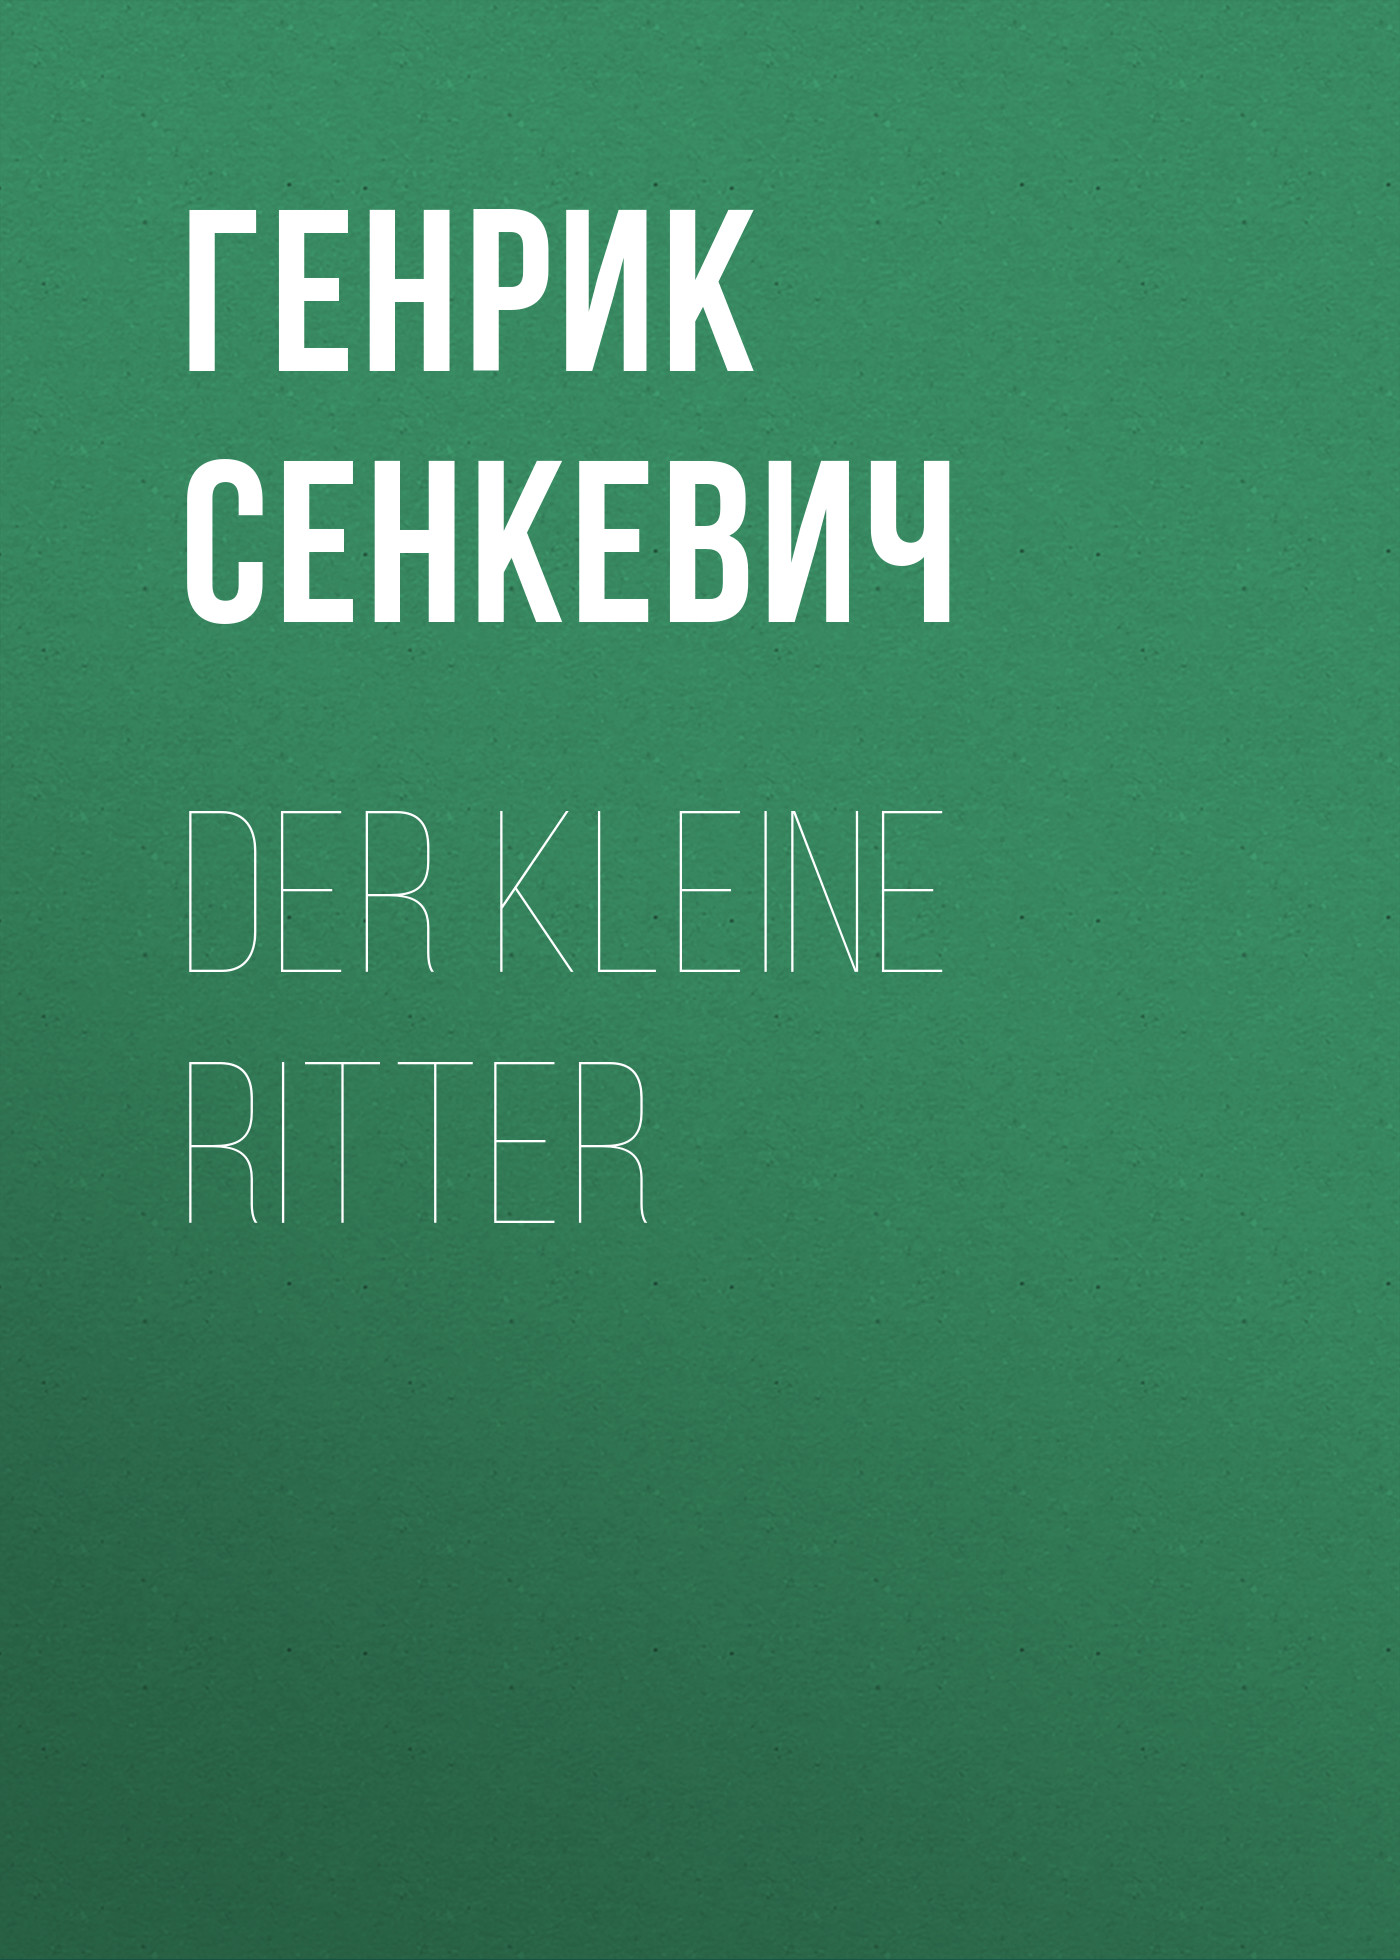 Книга Der kleine Ritter из серии , созданная Генрик Сенкевич, может относится к жанру Зарубежная старинная литература, Зарубежная классика. Стоимость электронной книги Der kleine Ritter с идентификатором 25475799 составляет 0 руб.